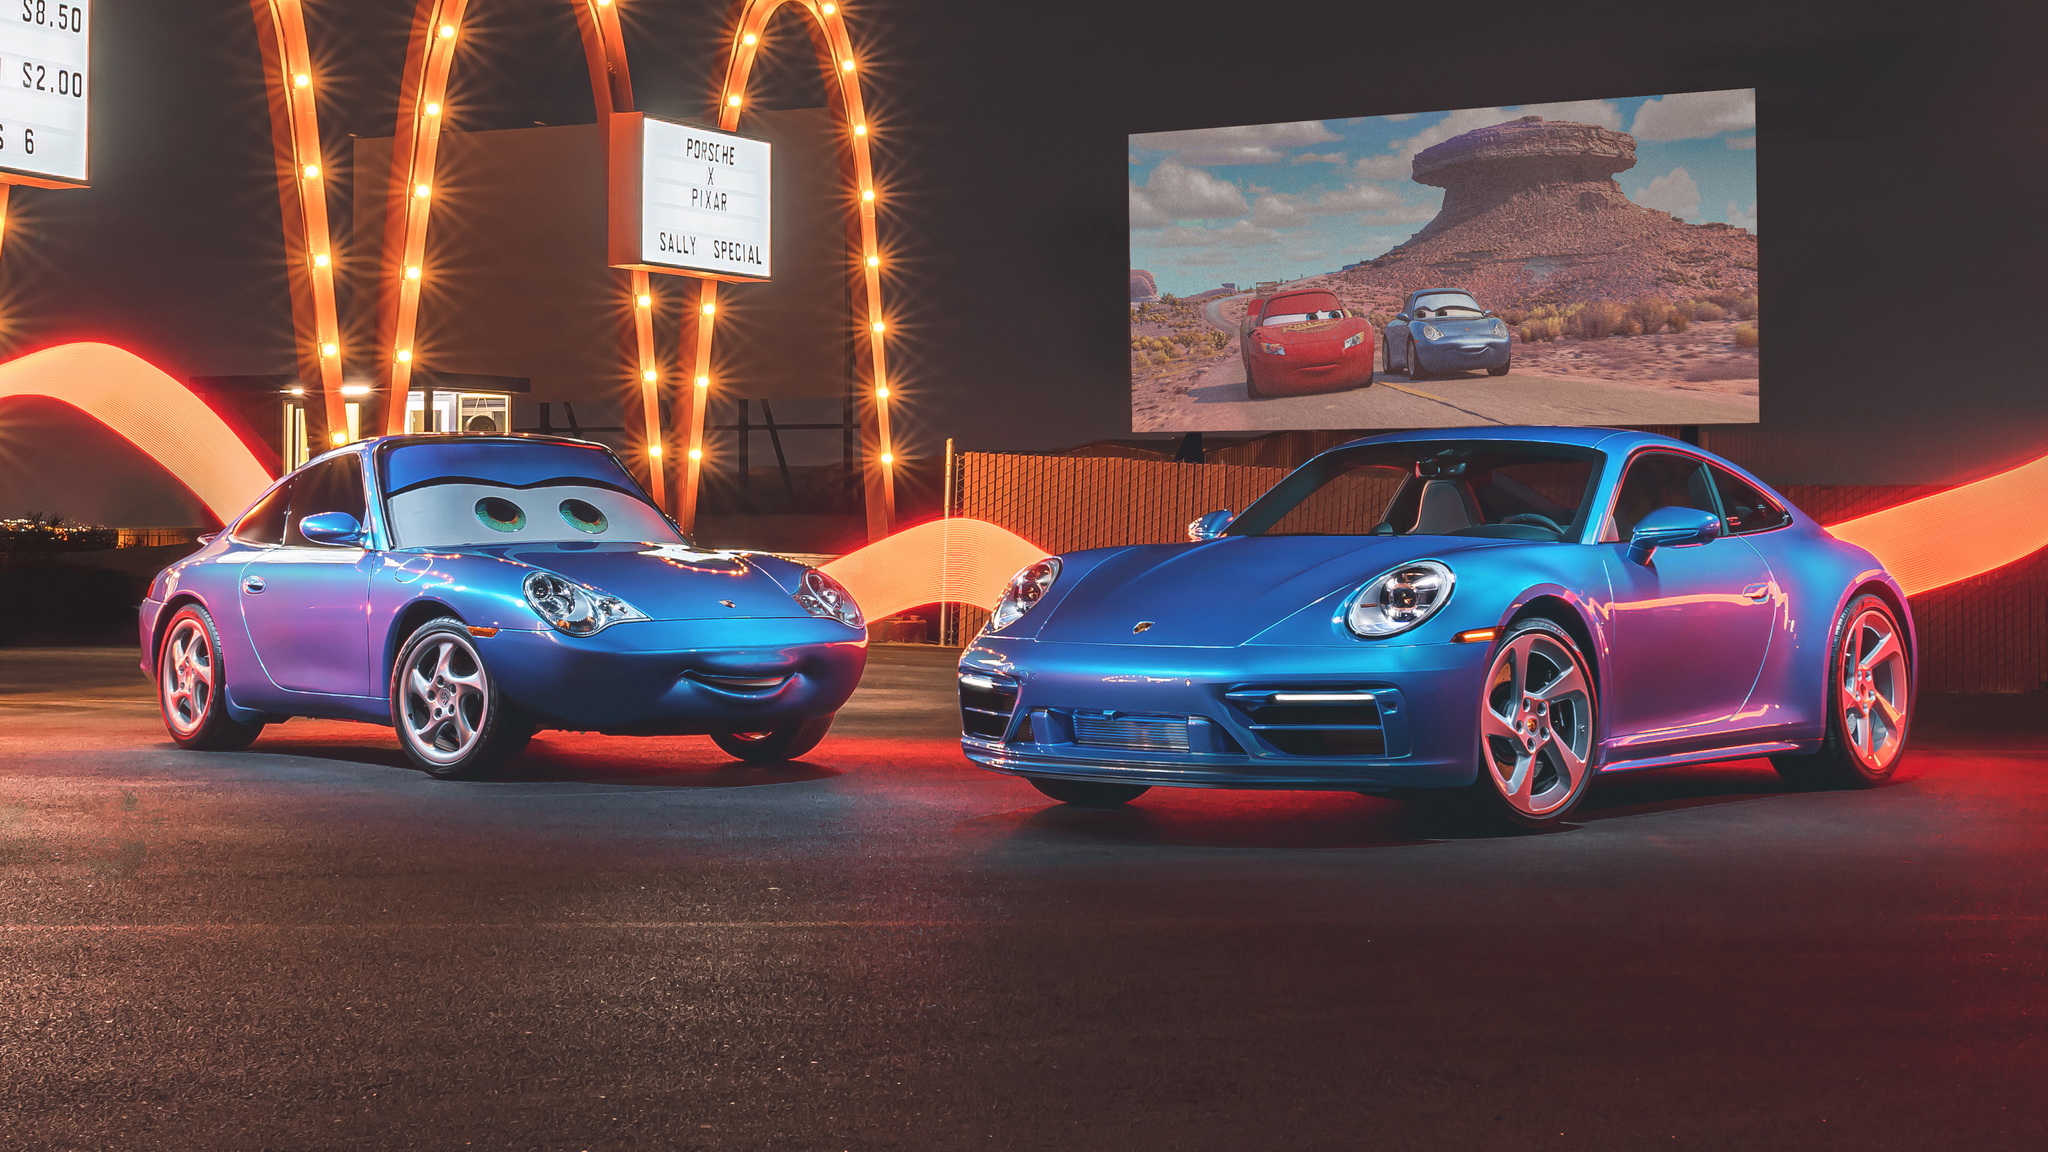 คันเดียวในโลก!! Porsche x Pixar เปิดตัว 911 Sally Special จากหนัง Cars 